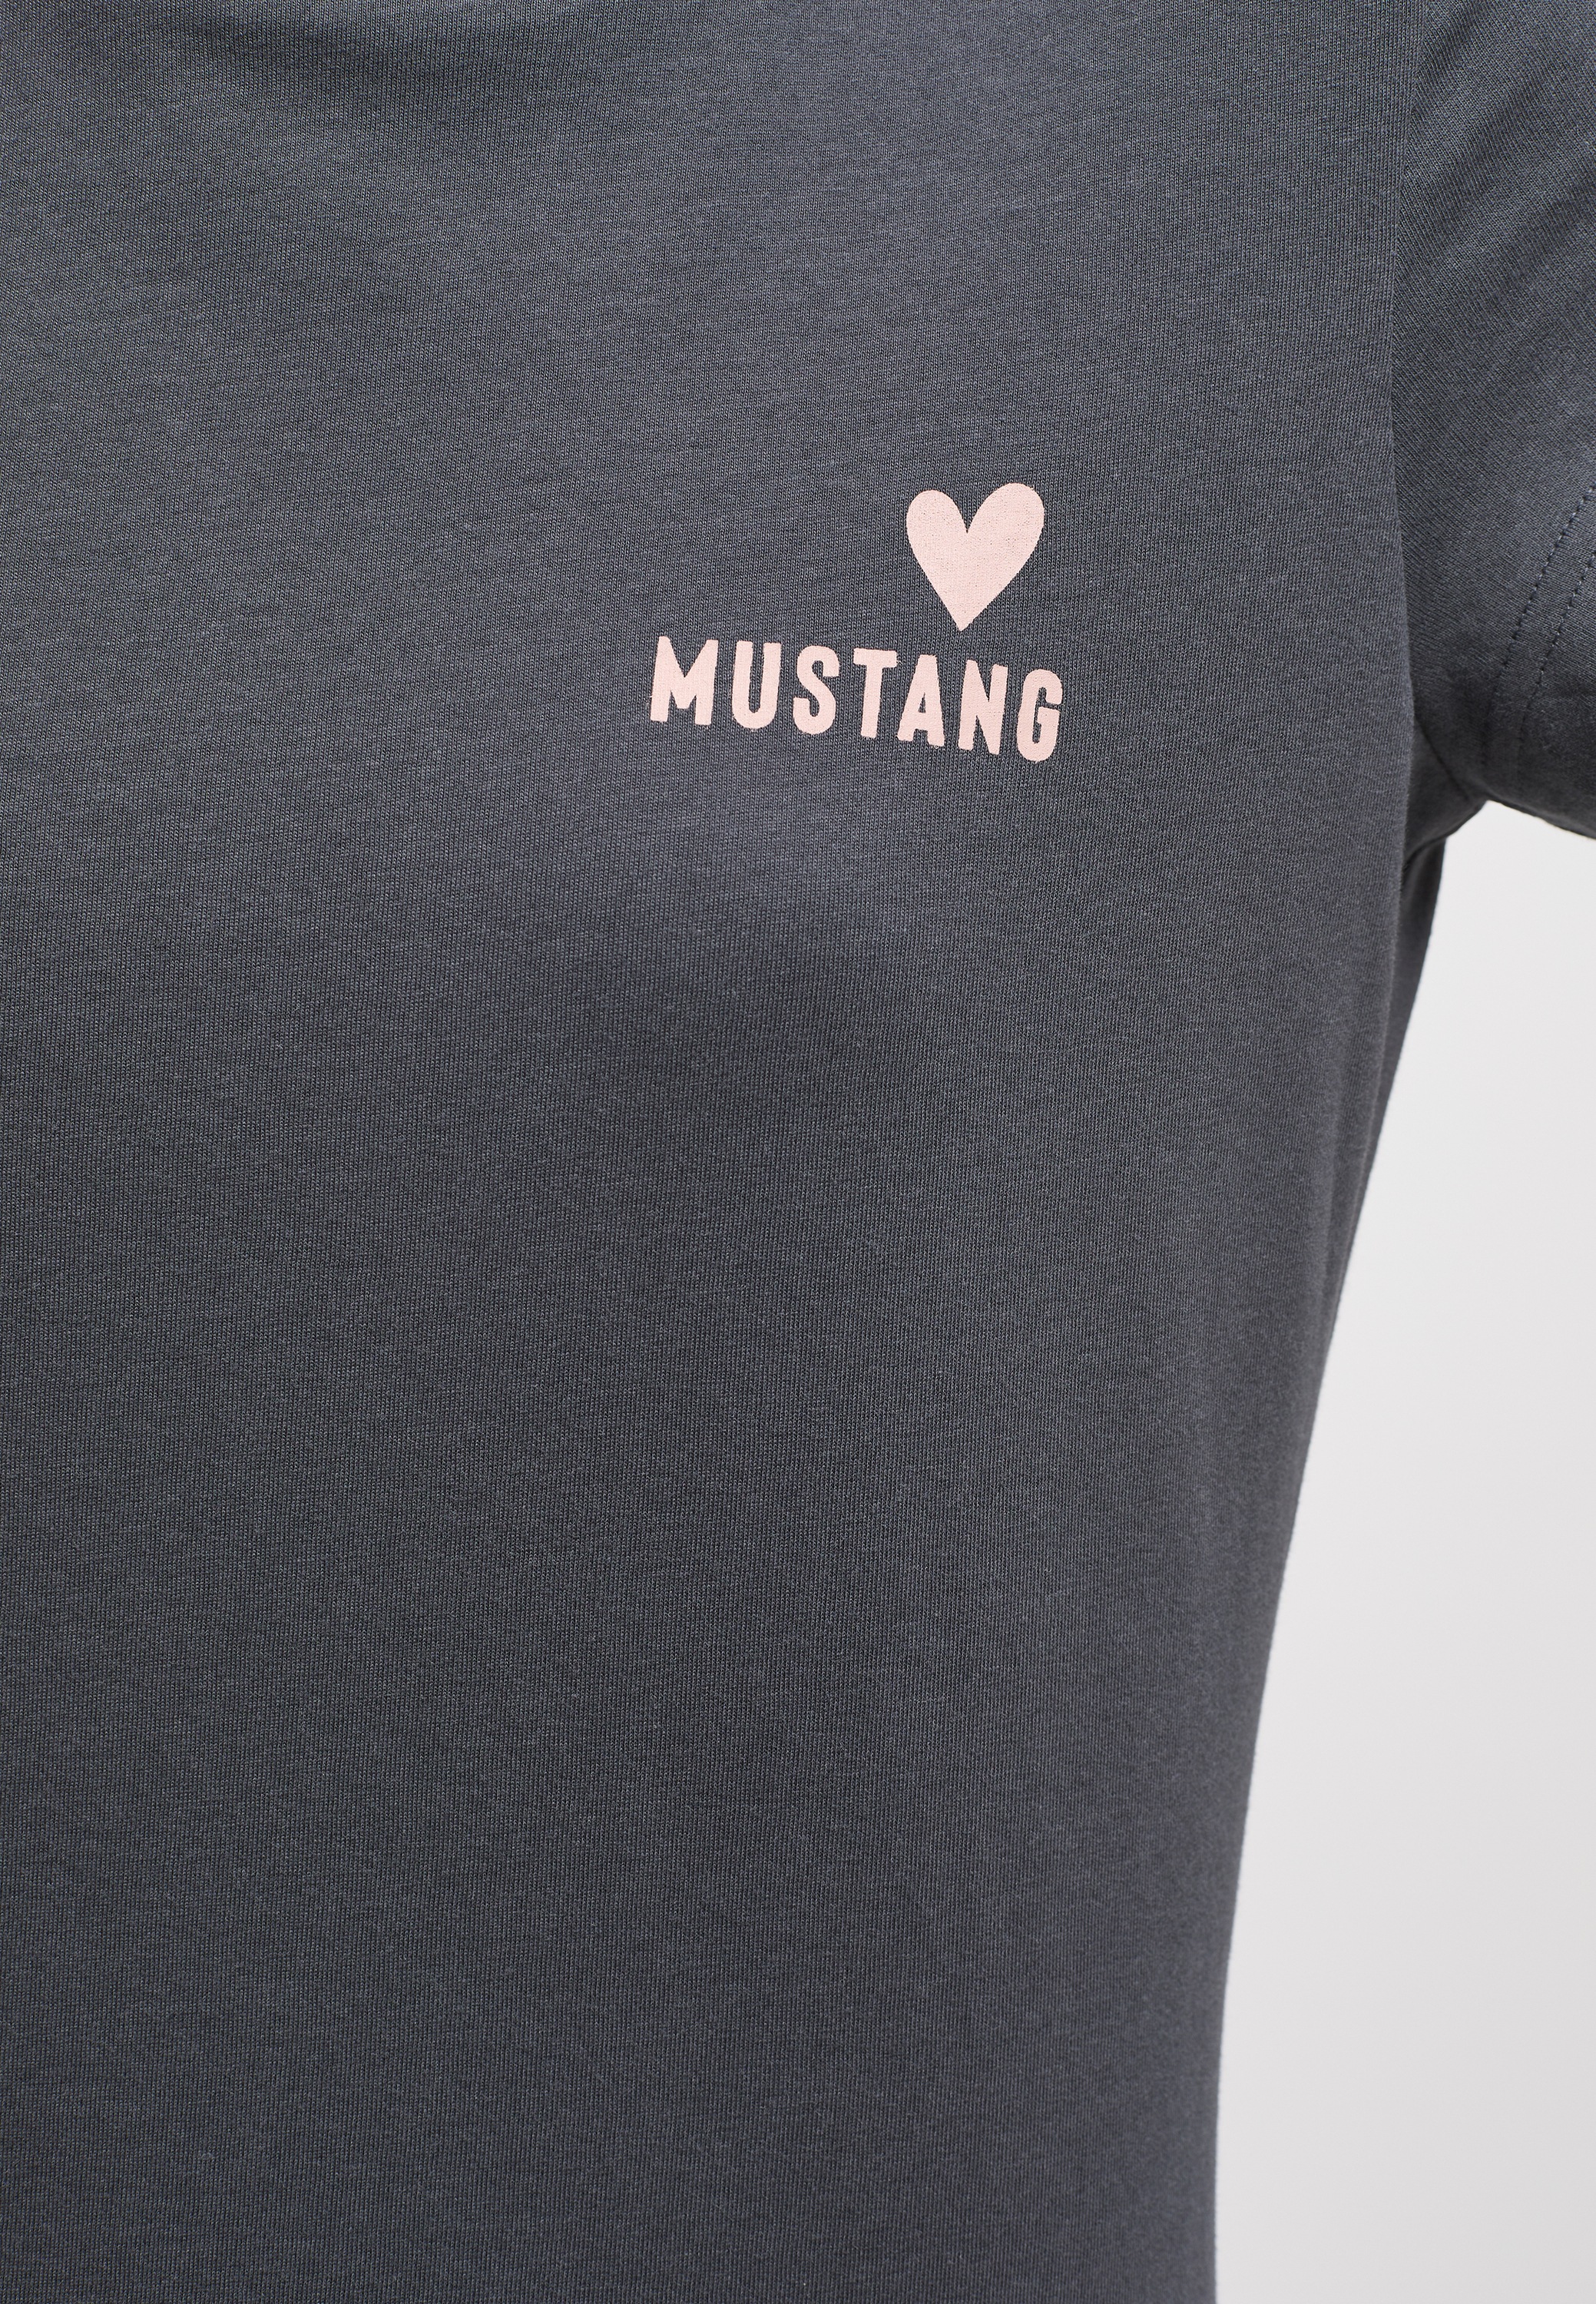 OTTO bestellen bei MUSTANG »T-Shirt« Kurzarmshirt